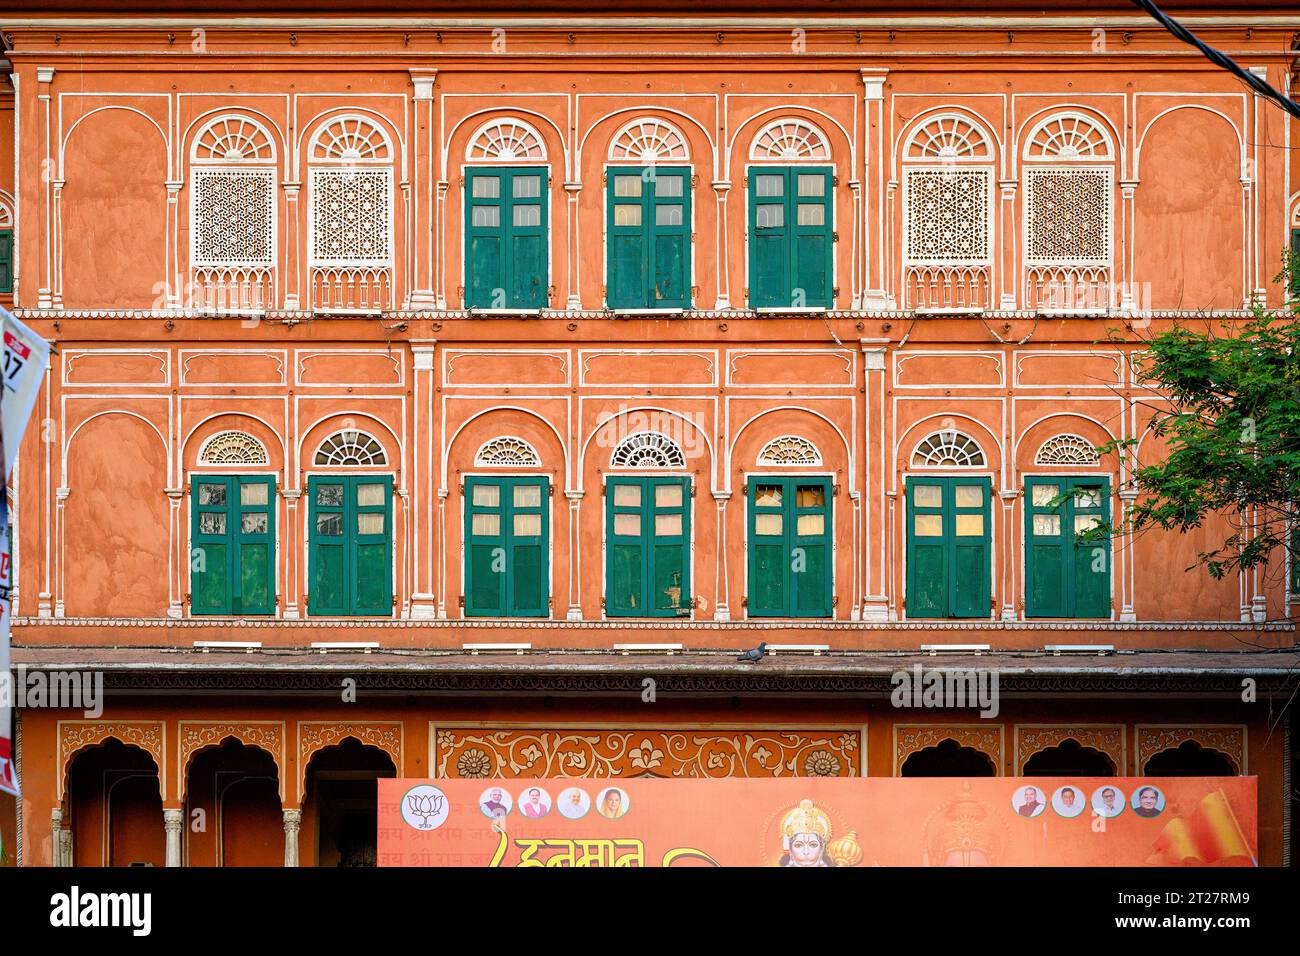 Johari Bazar Rd, la plus célèbre des nombreuses rues à colonnades de Jaipur Banque D'Images